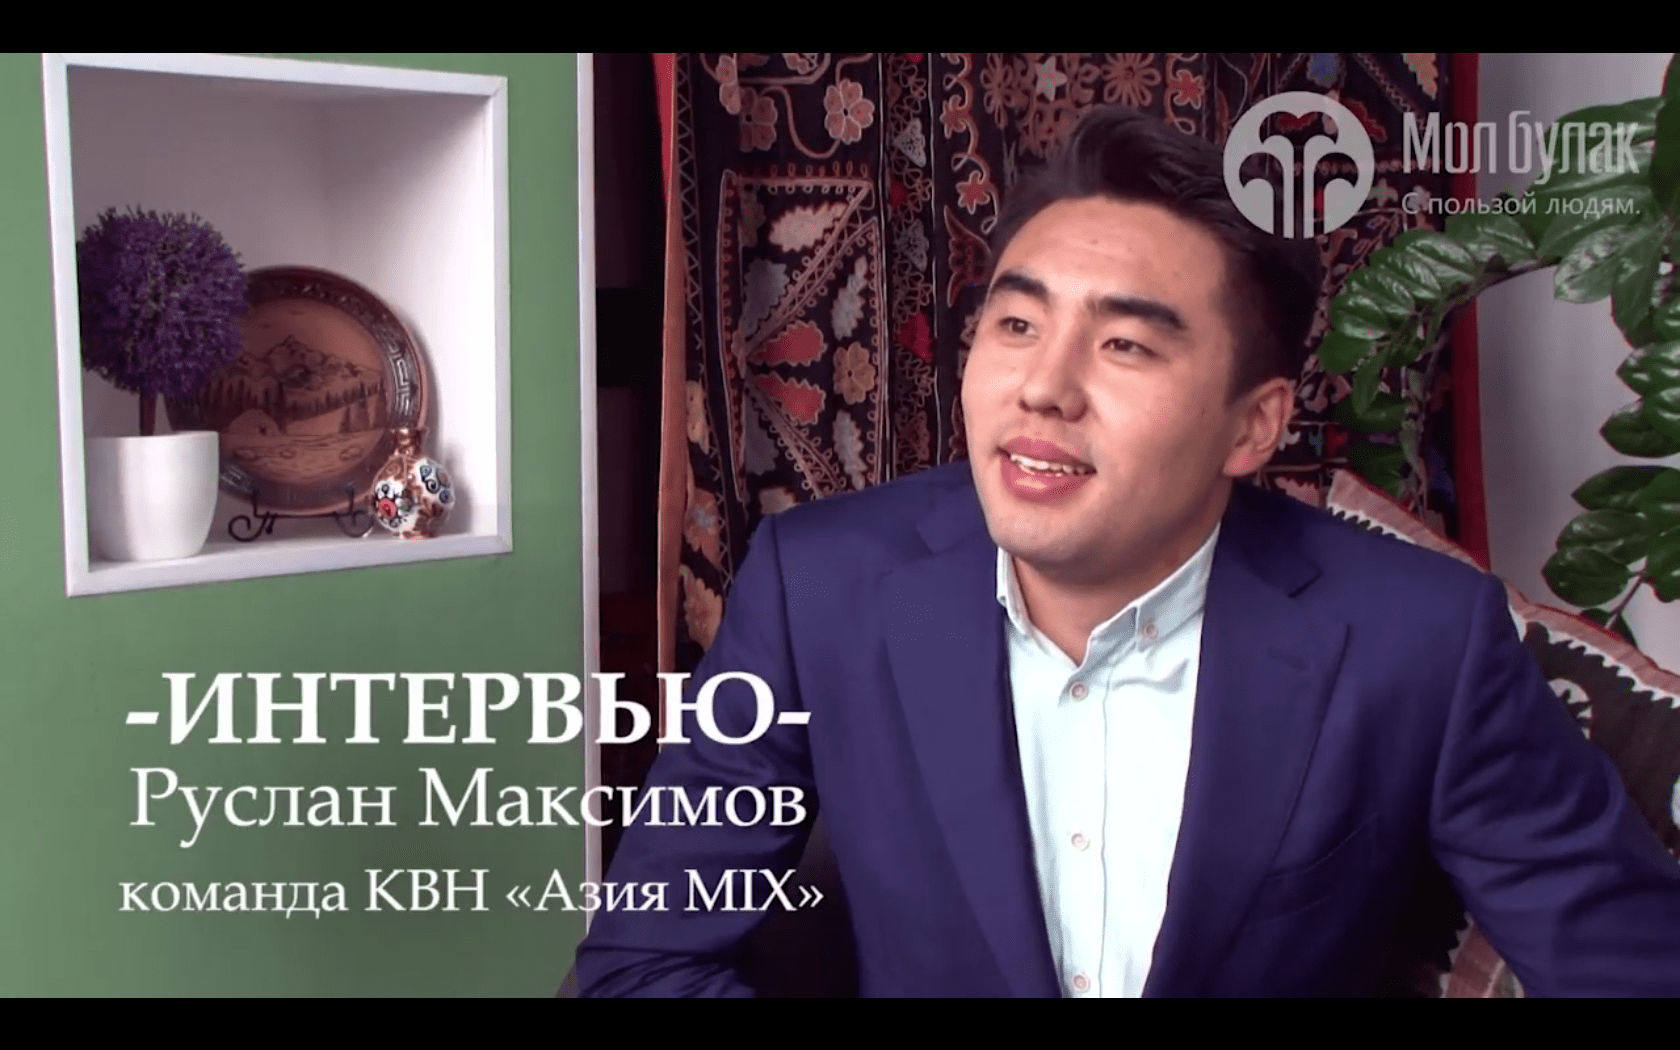 Интервью. Руслан Максимов, команда КВН "Азия MIX"